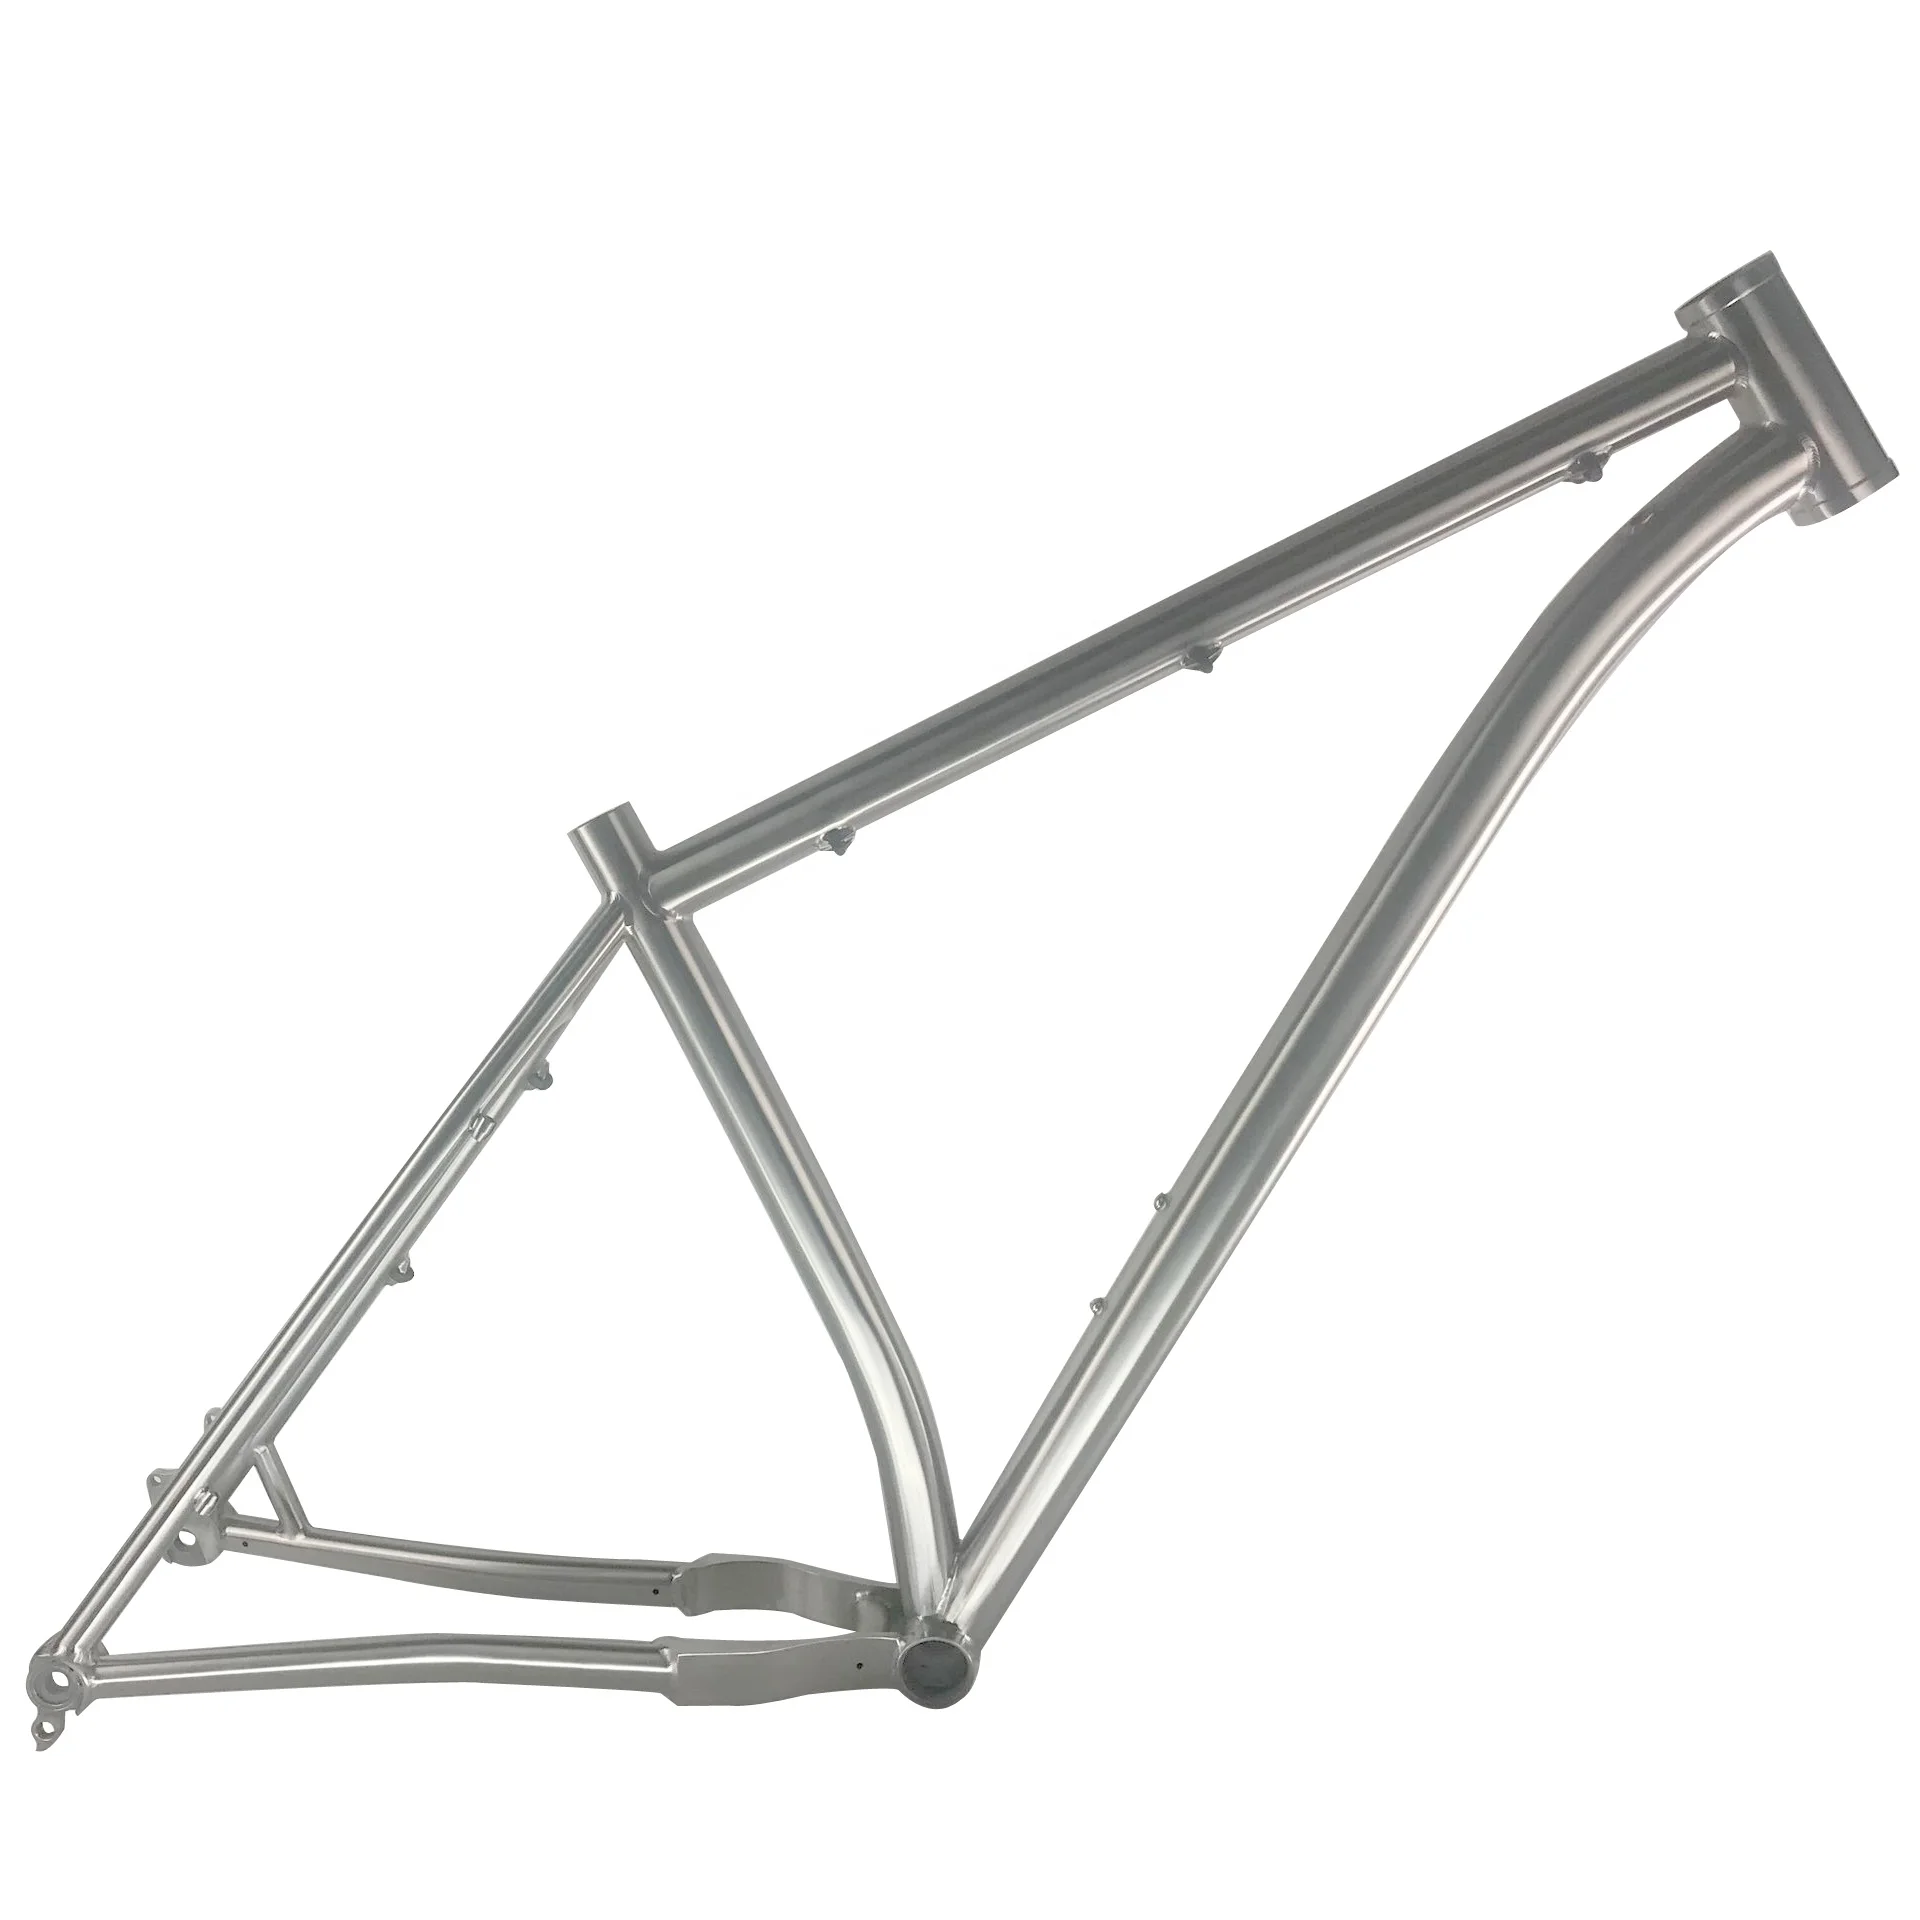 xc mountain bike frame